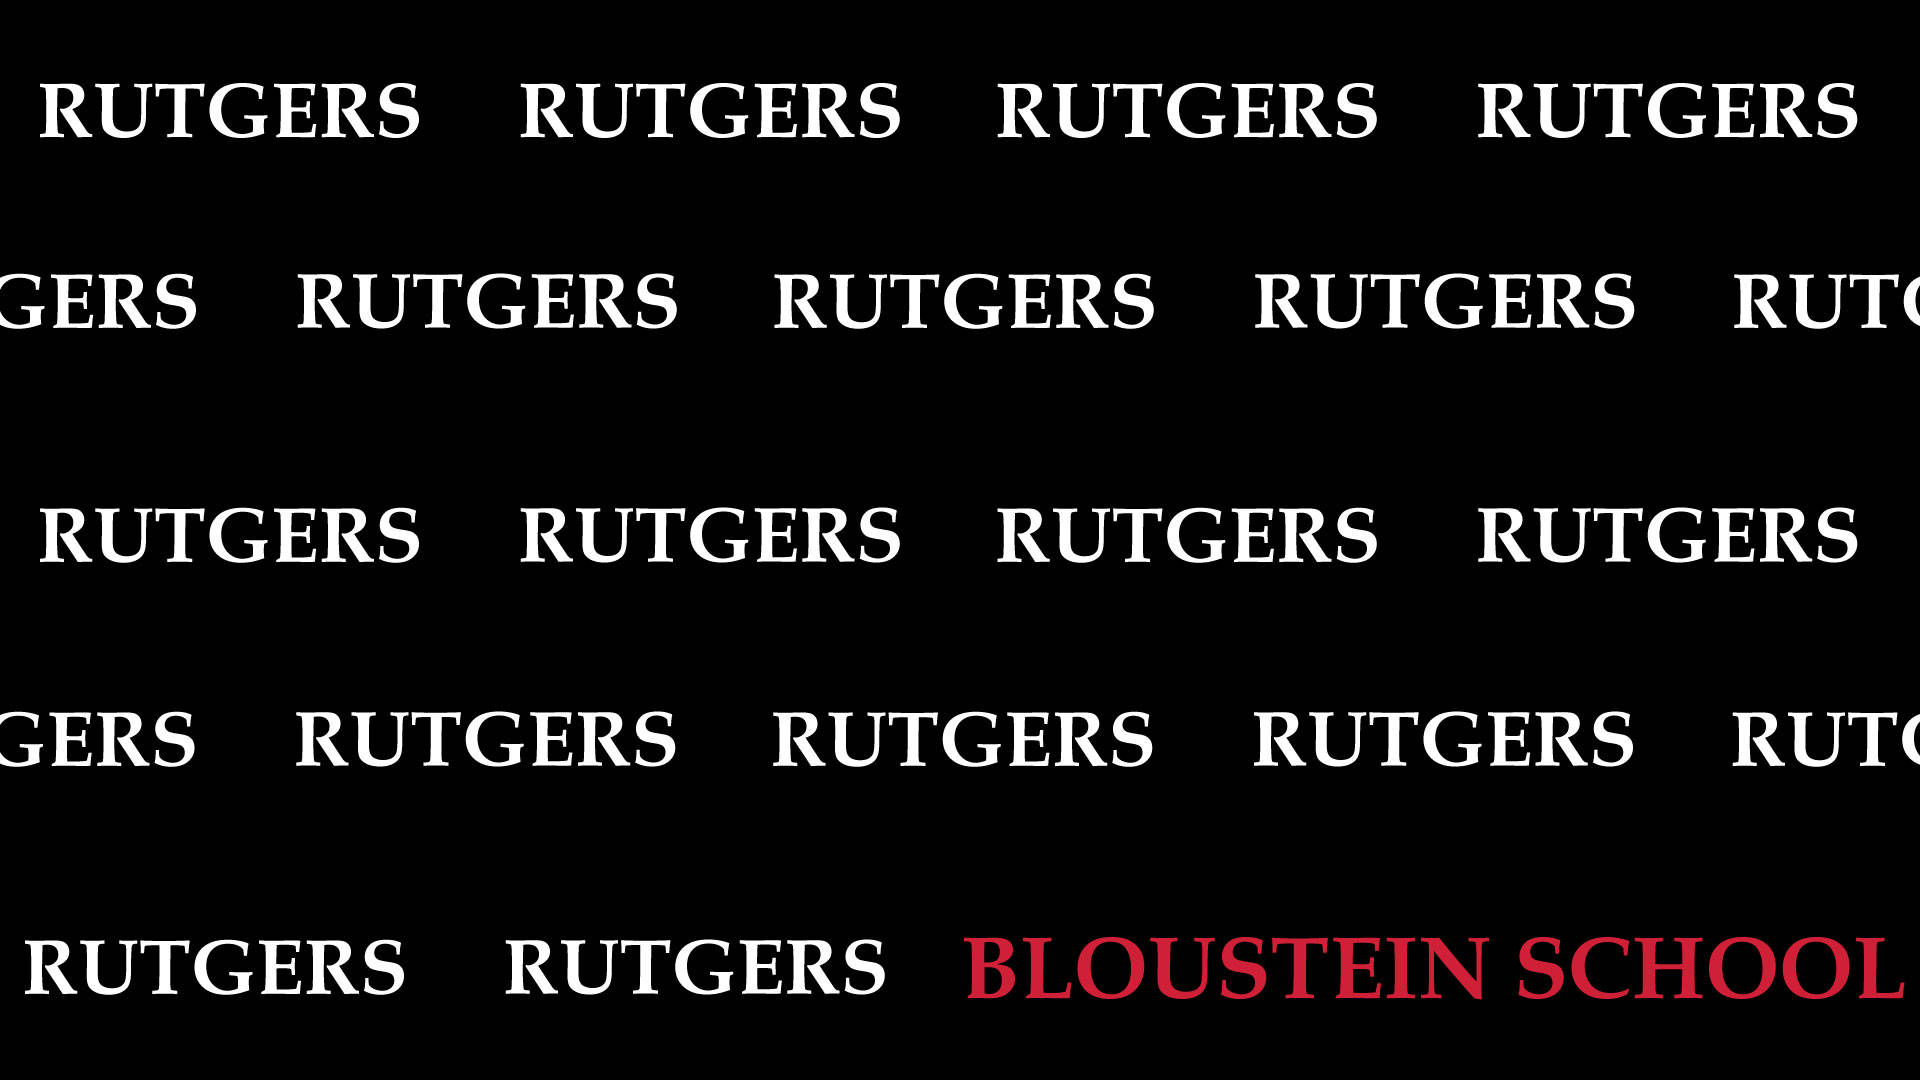 Rutgersbloustein School-logo Wallpaper